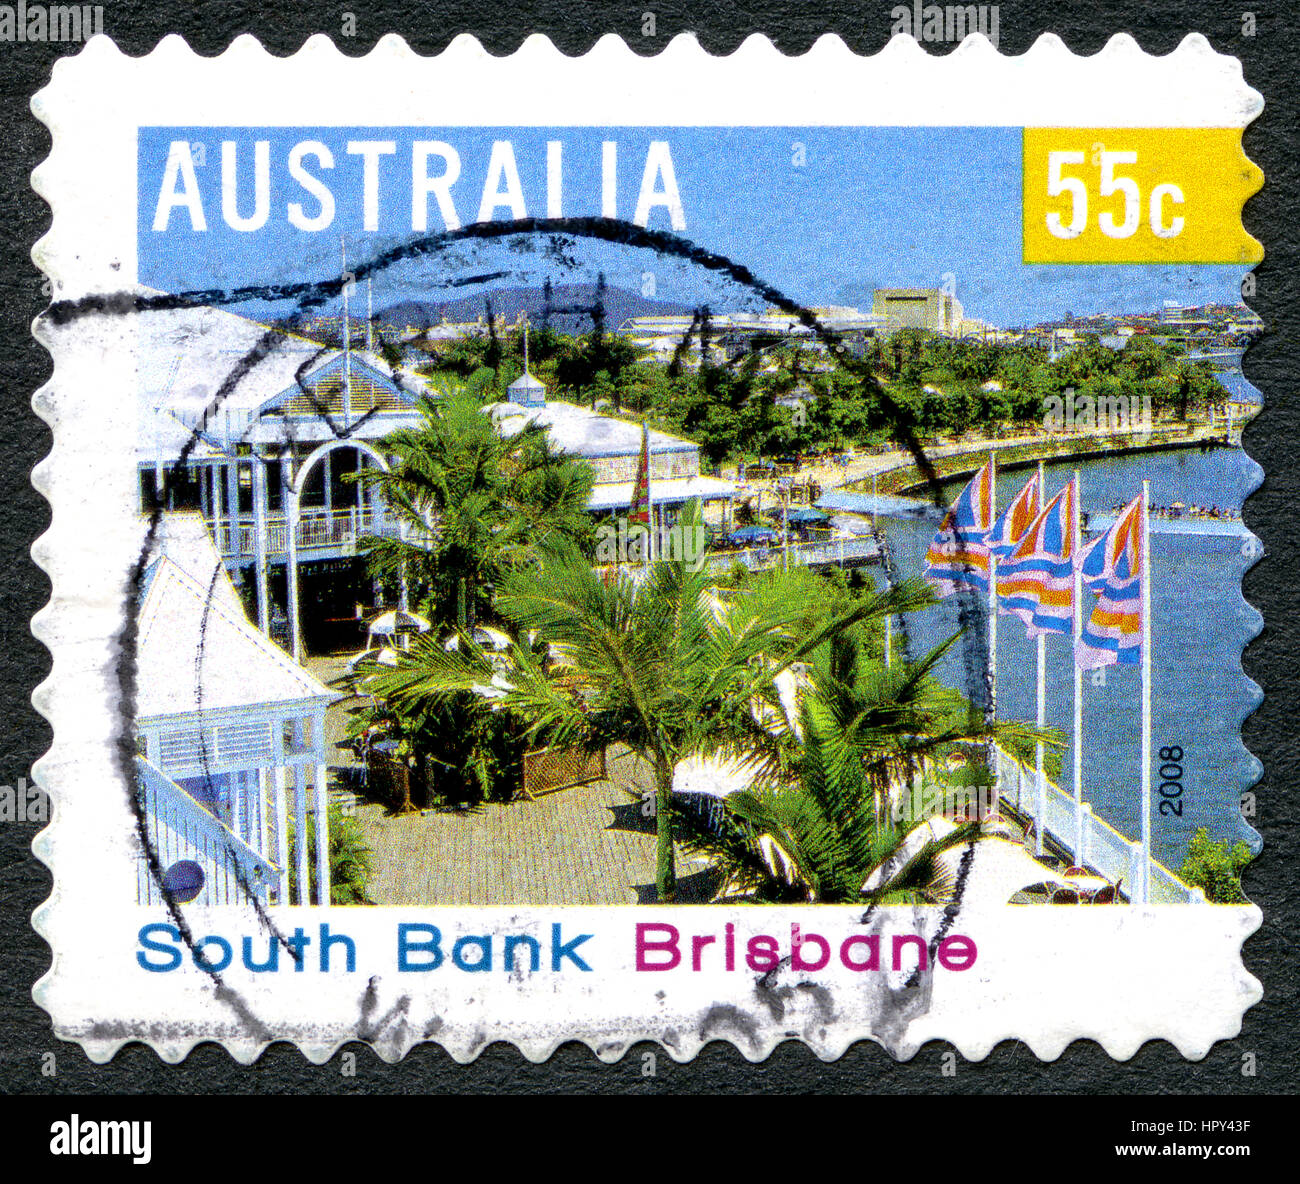 Australien - CIRCA 2008: Eine gebrauchte Briefmarke aus Australien, ein Bild der South Bank in Brisbane, ca. 2008. Stockfoto